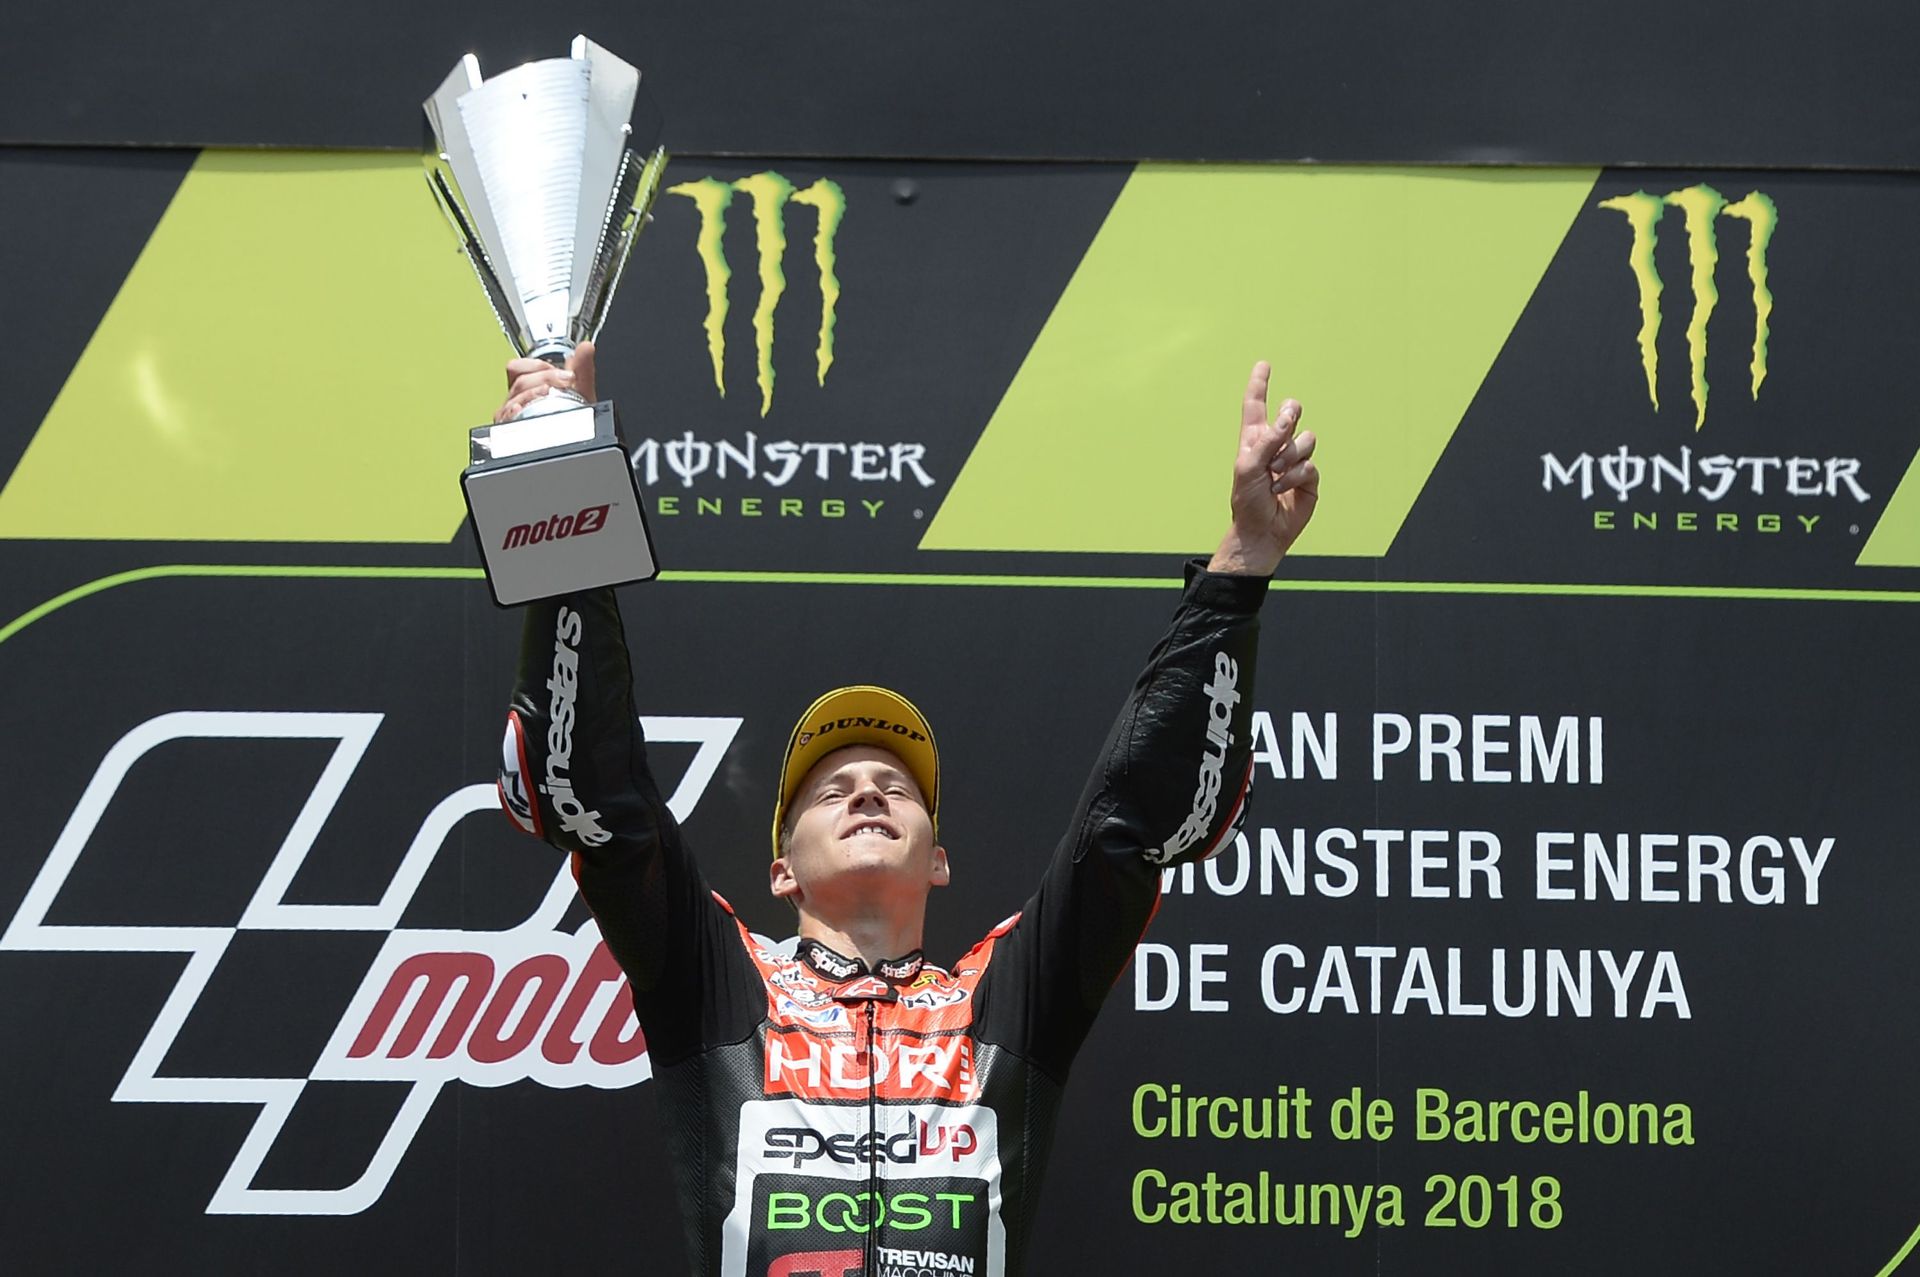 Après trois ans et demi de galères, Fabio Quartararo signe sa première victoire en moto2 à Barcelone